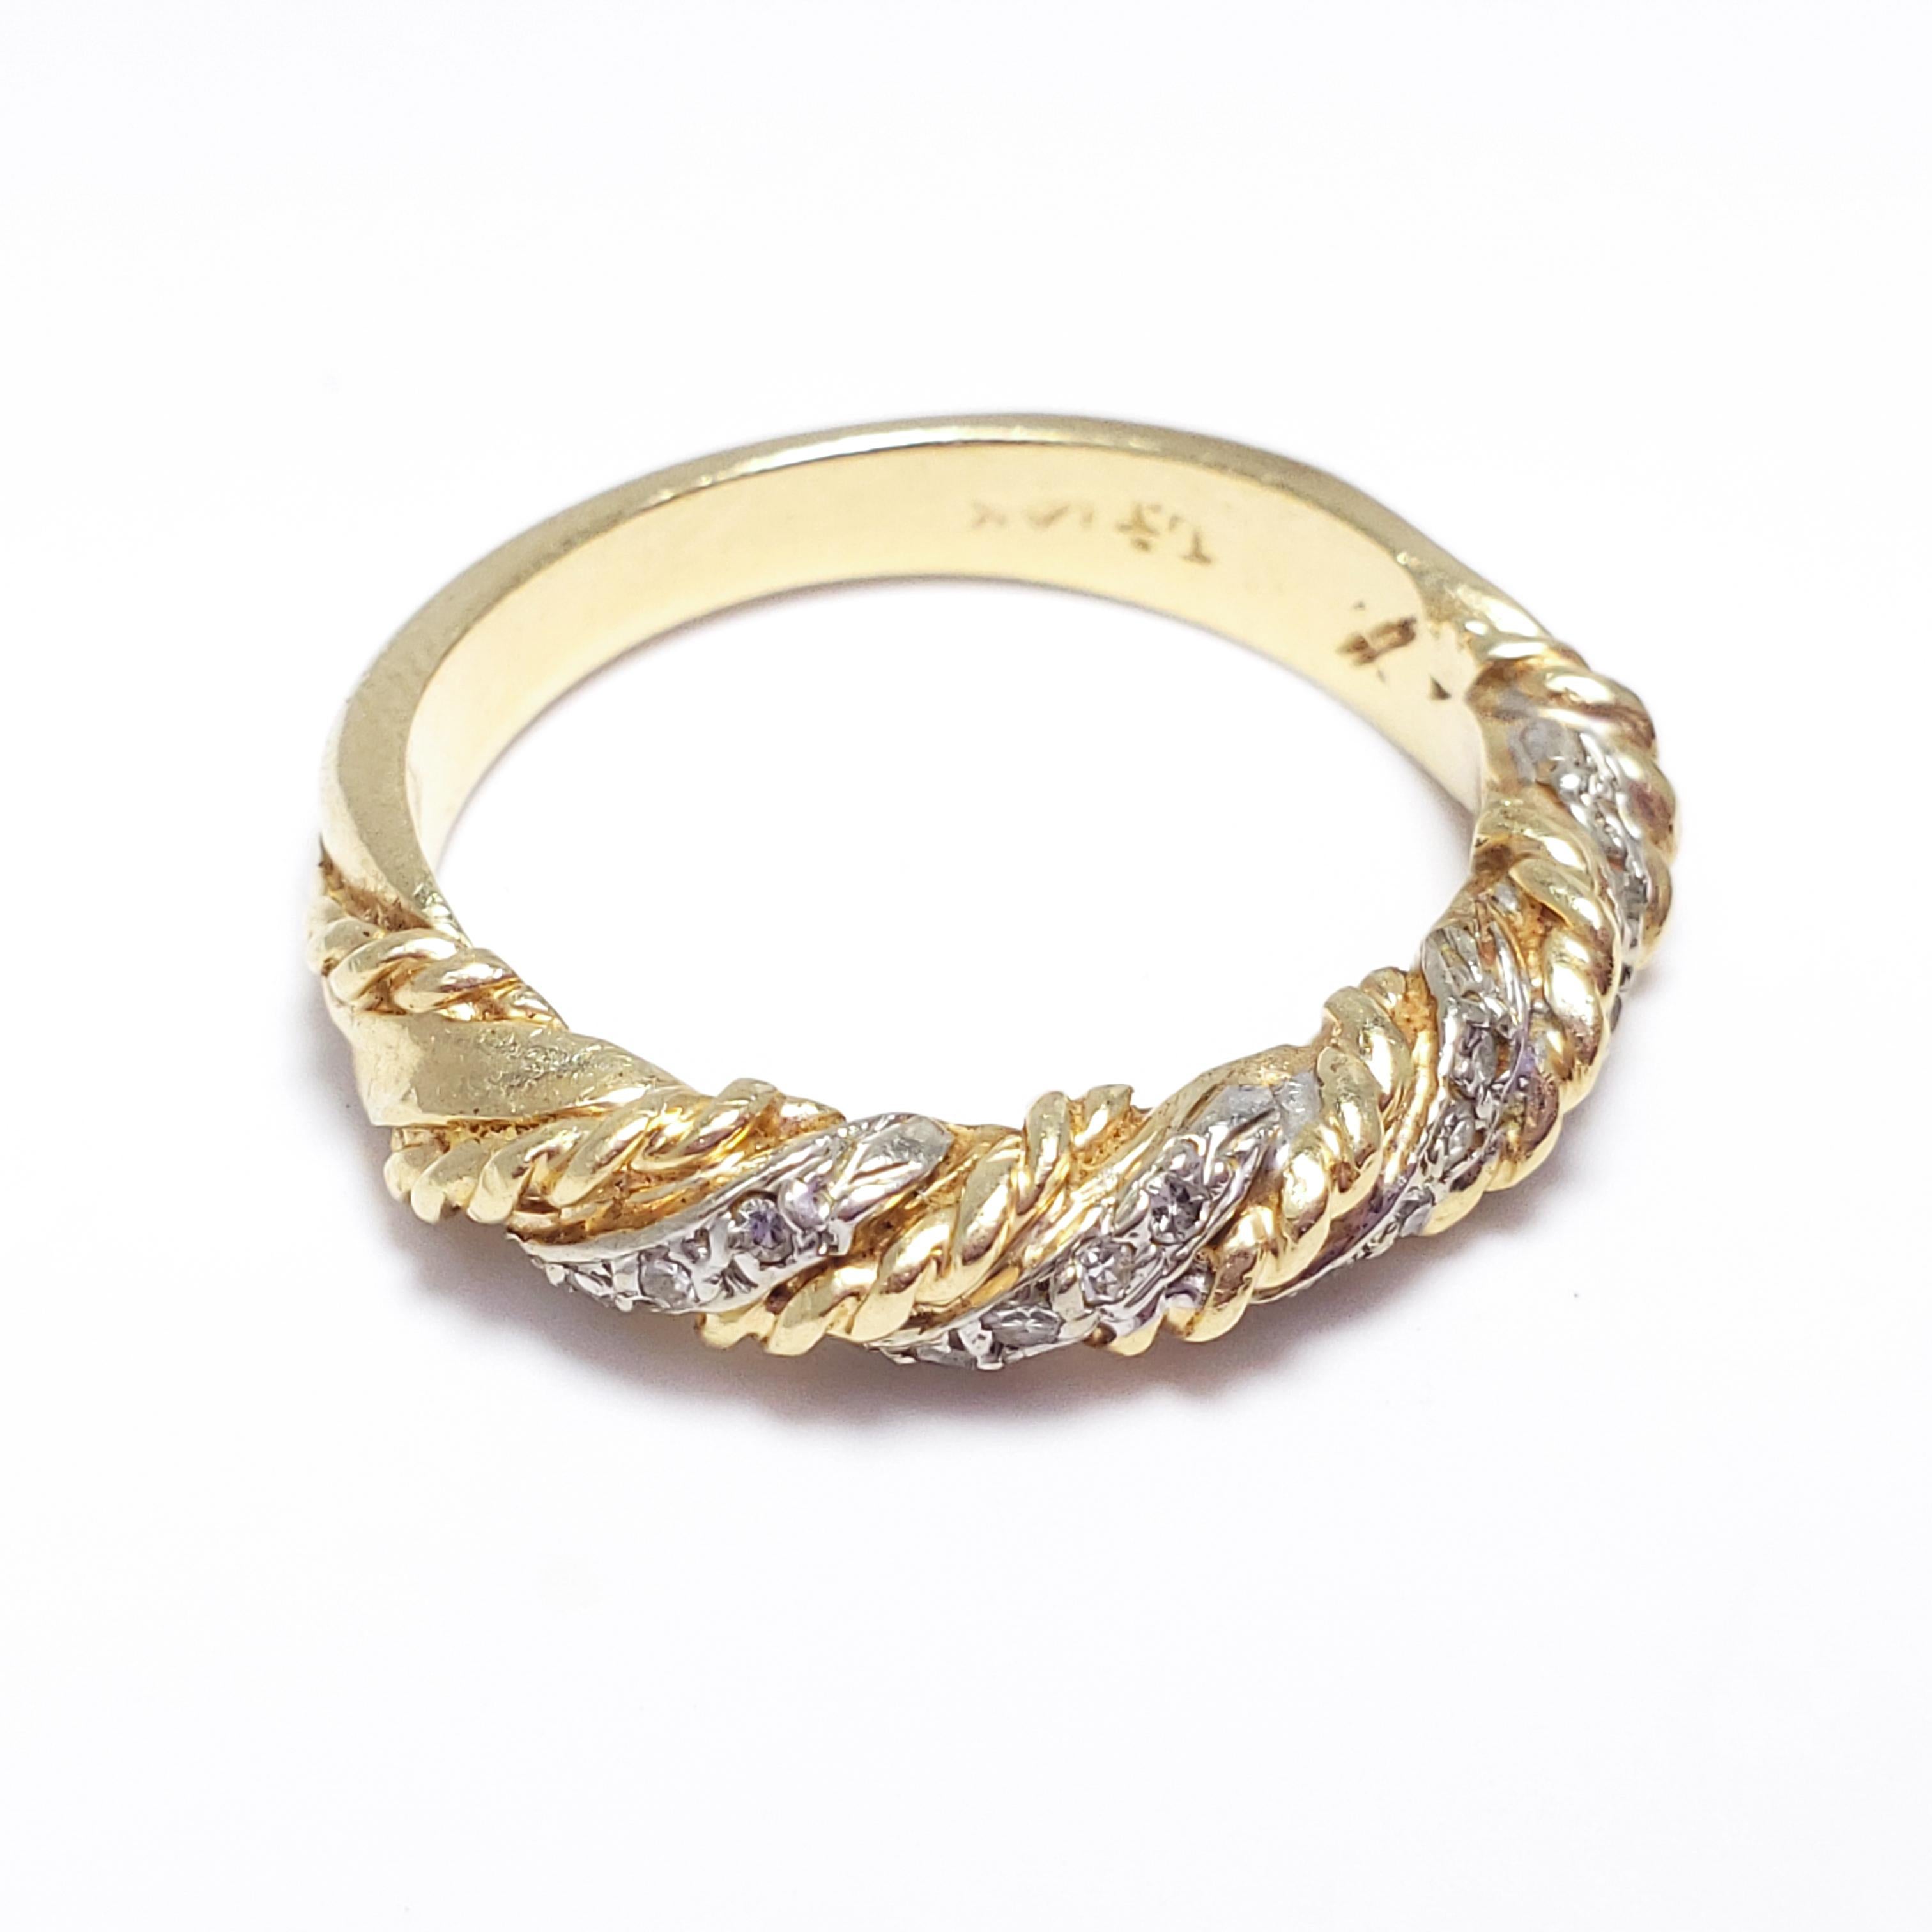 16 carat gold ring